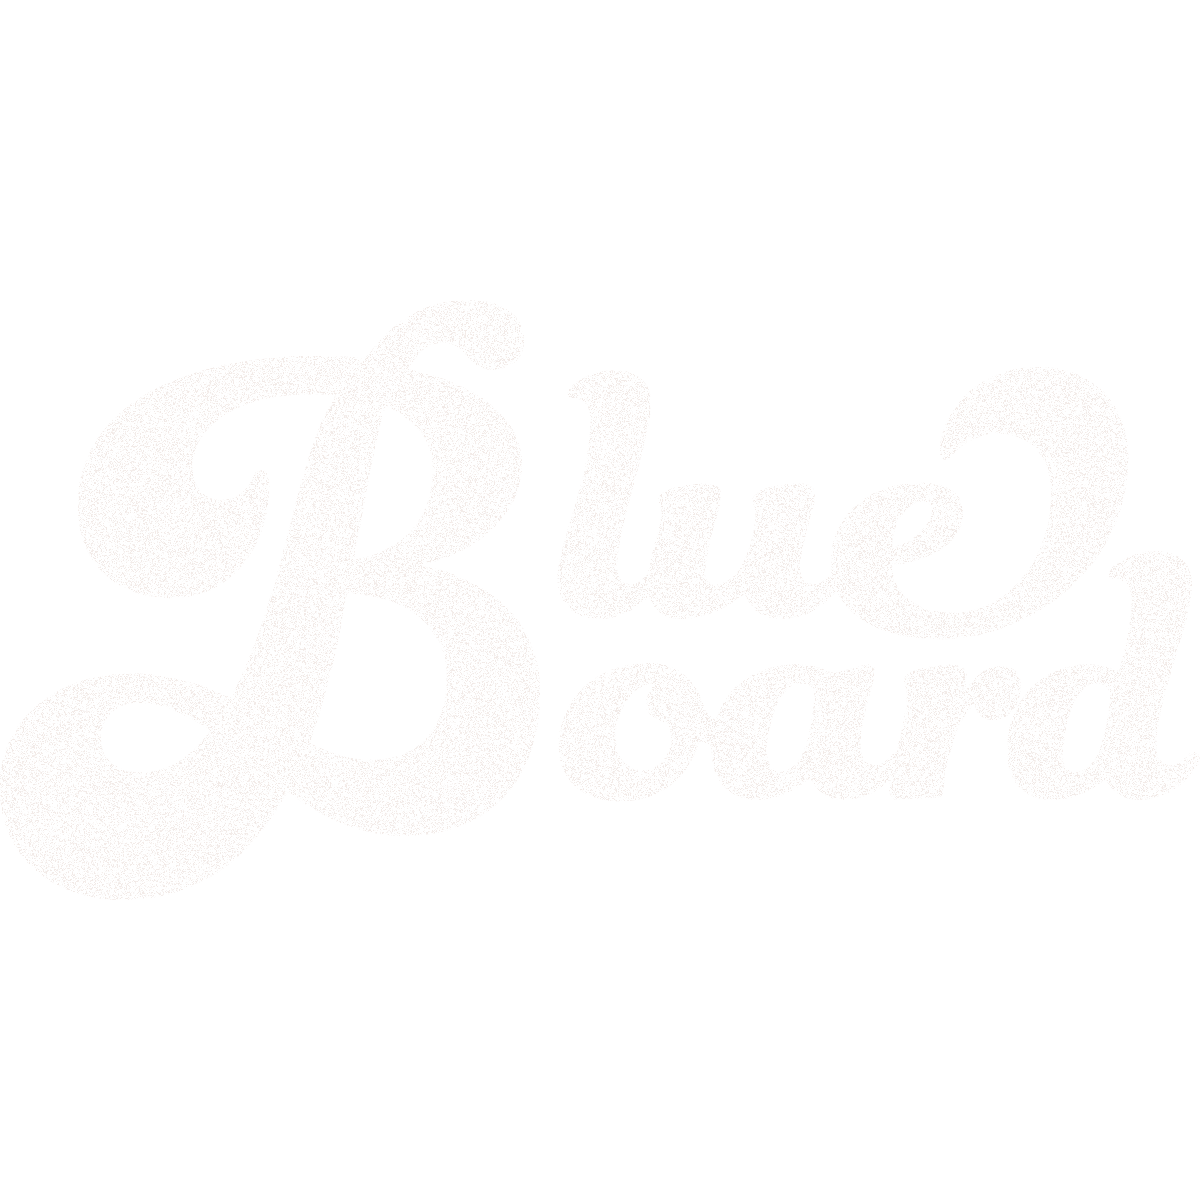 Blueboard Logo